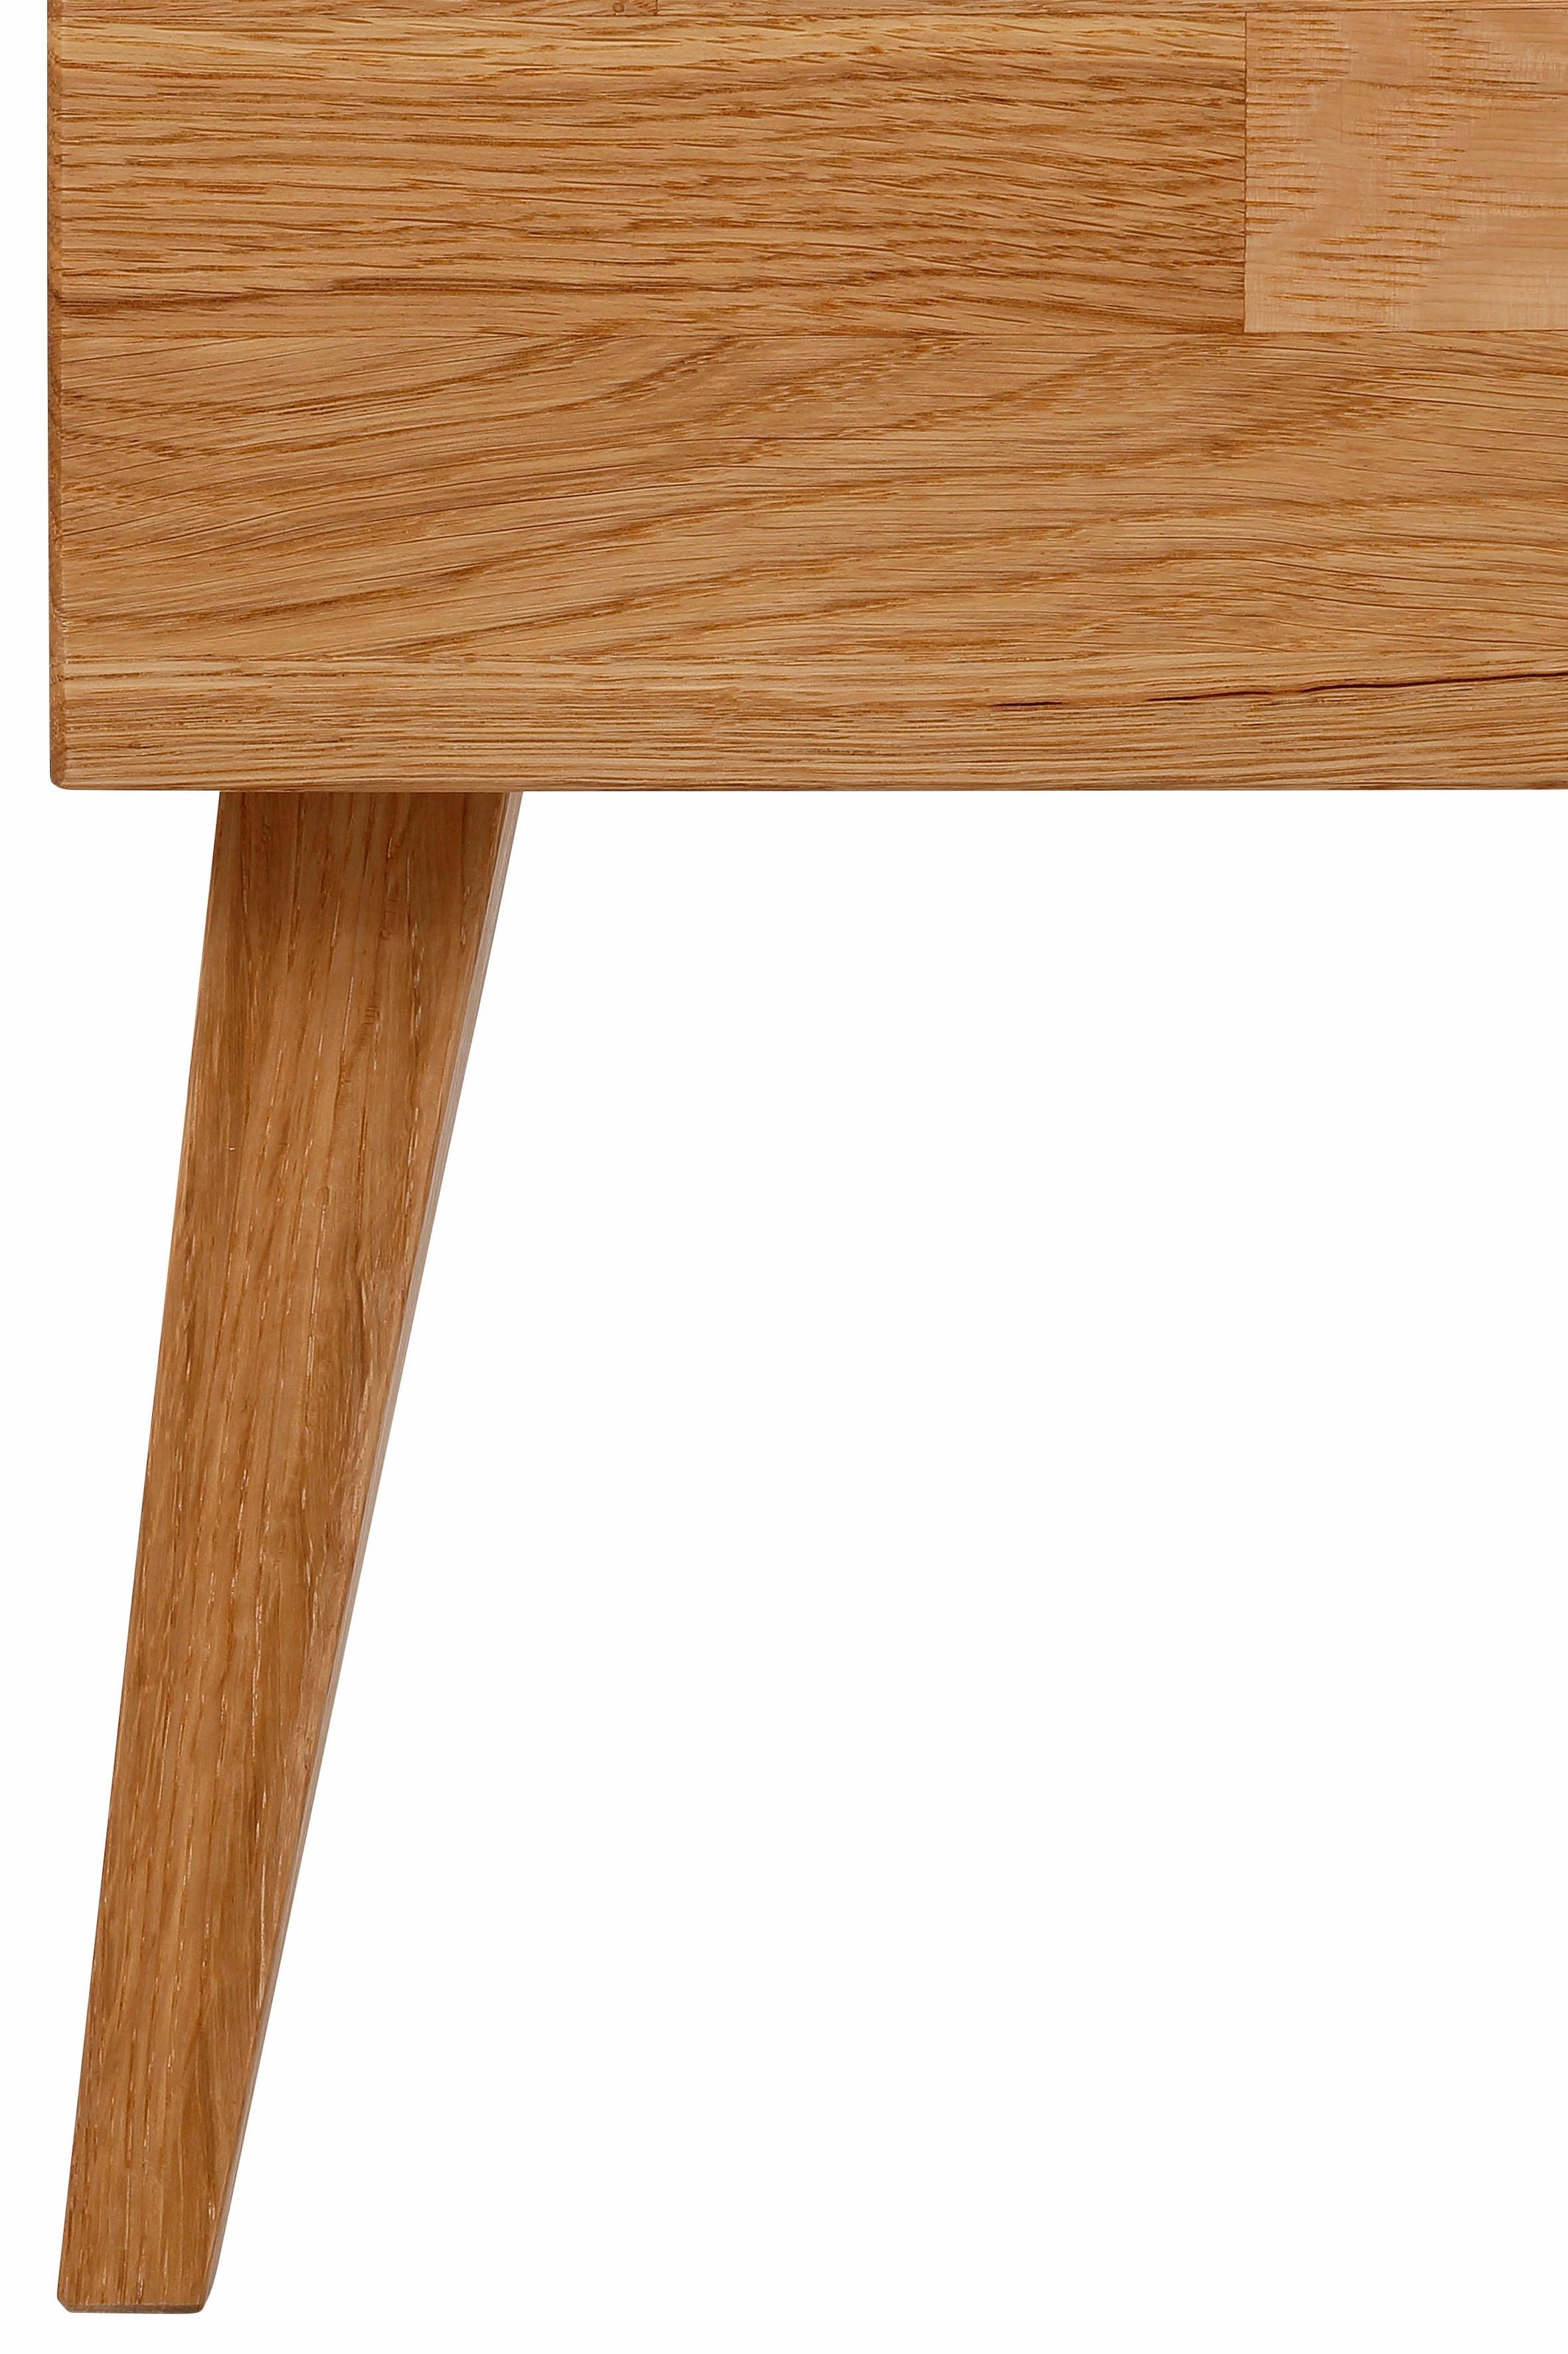 Home affaire Nachttisch »Natali«, mit einer Schublade, aus massiver Eiche, Breite 45 cm